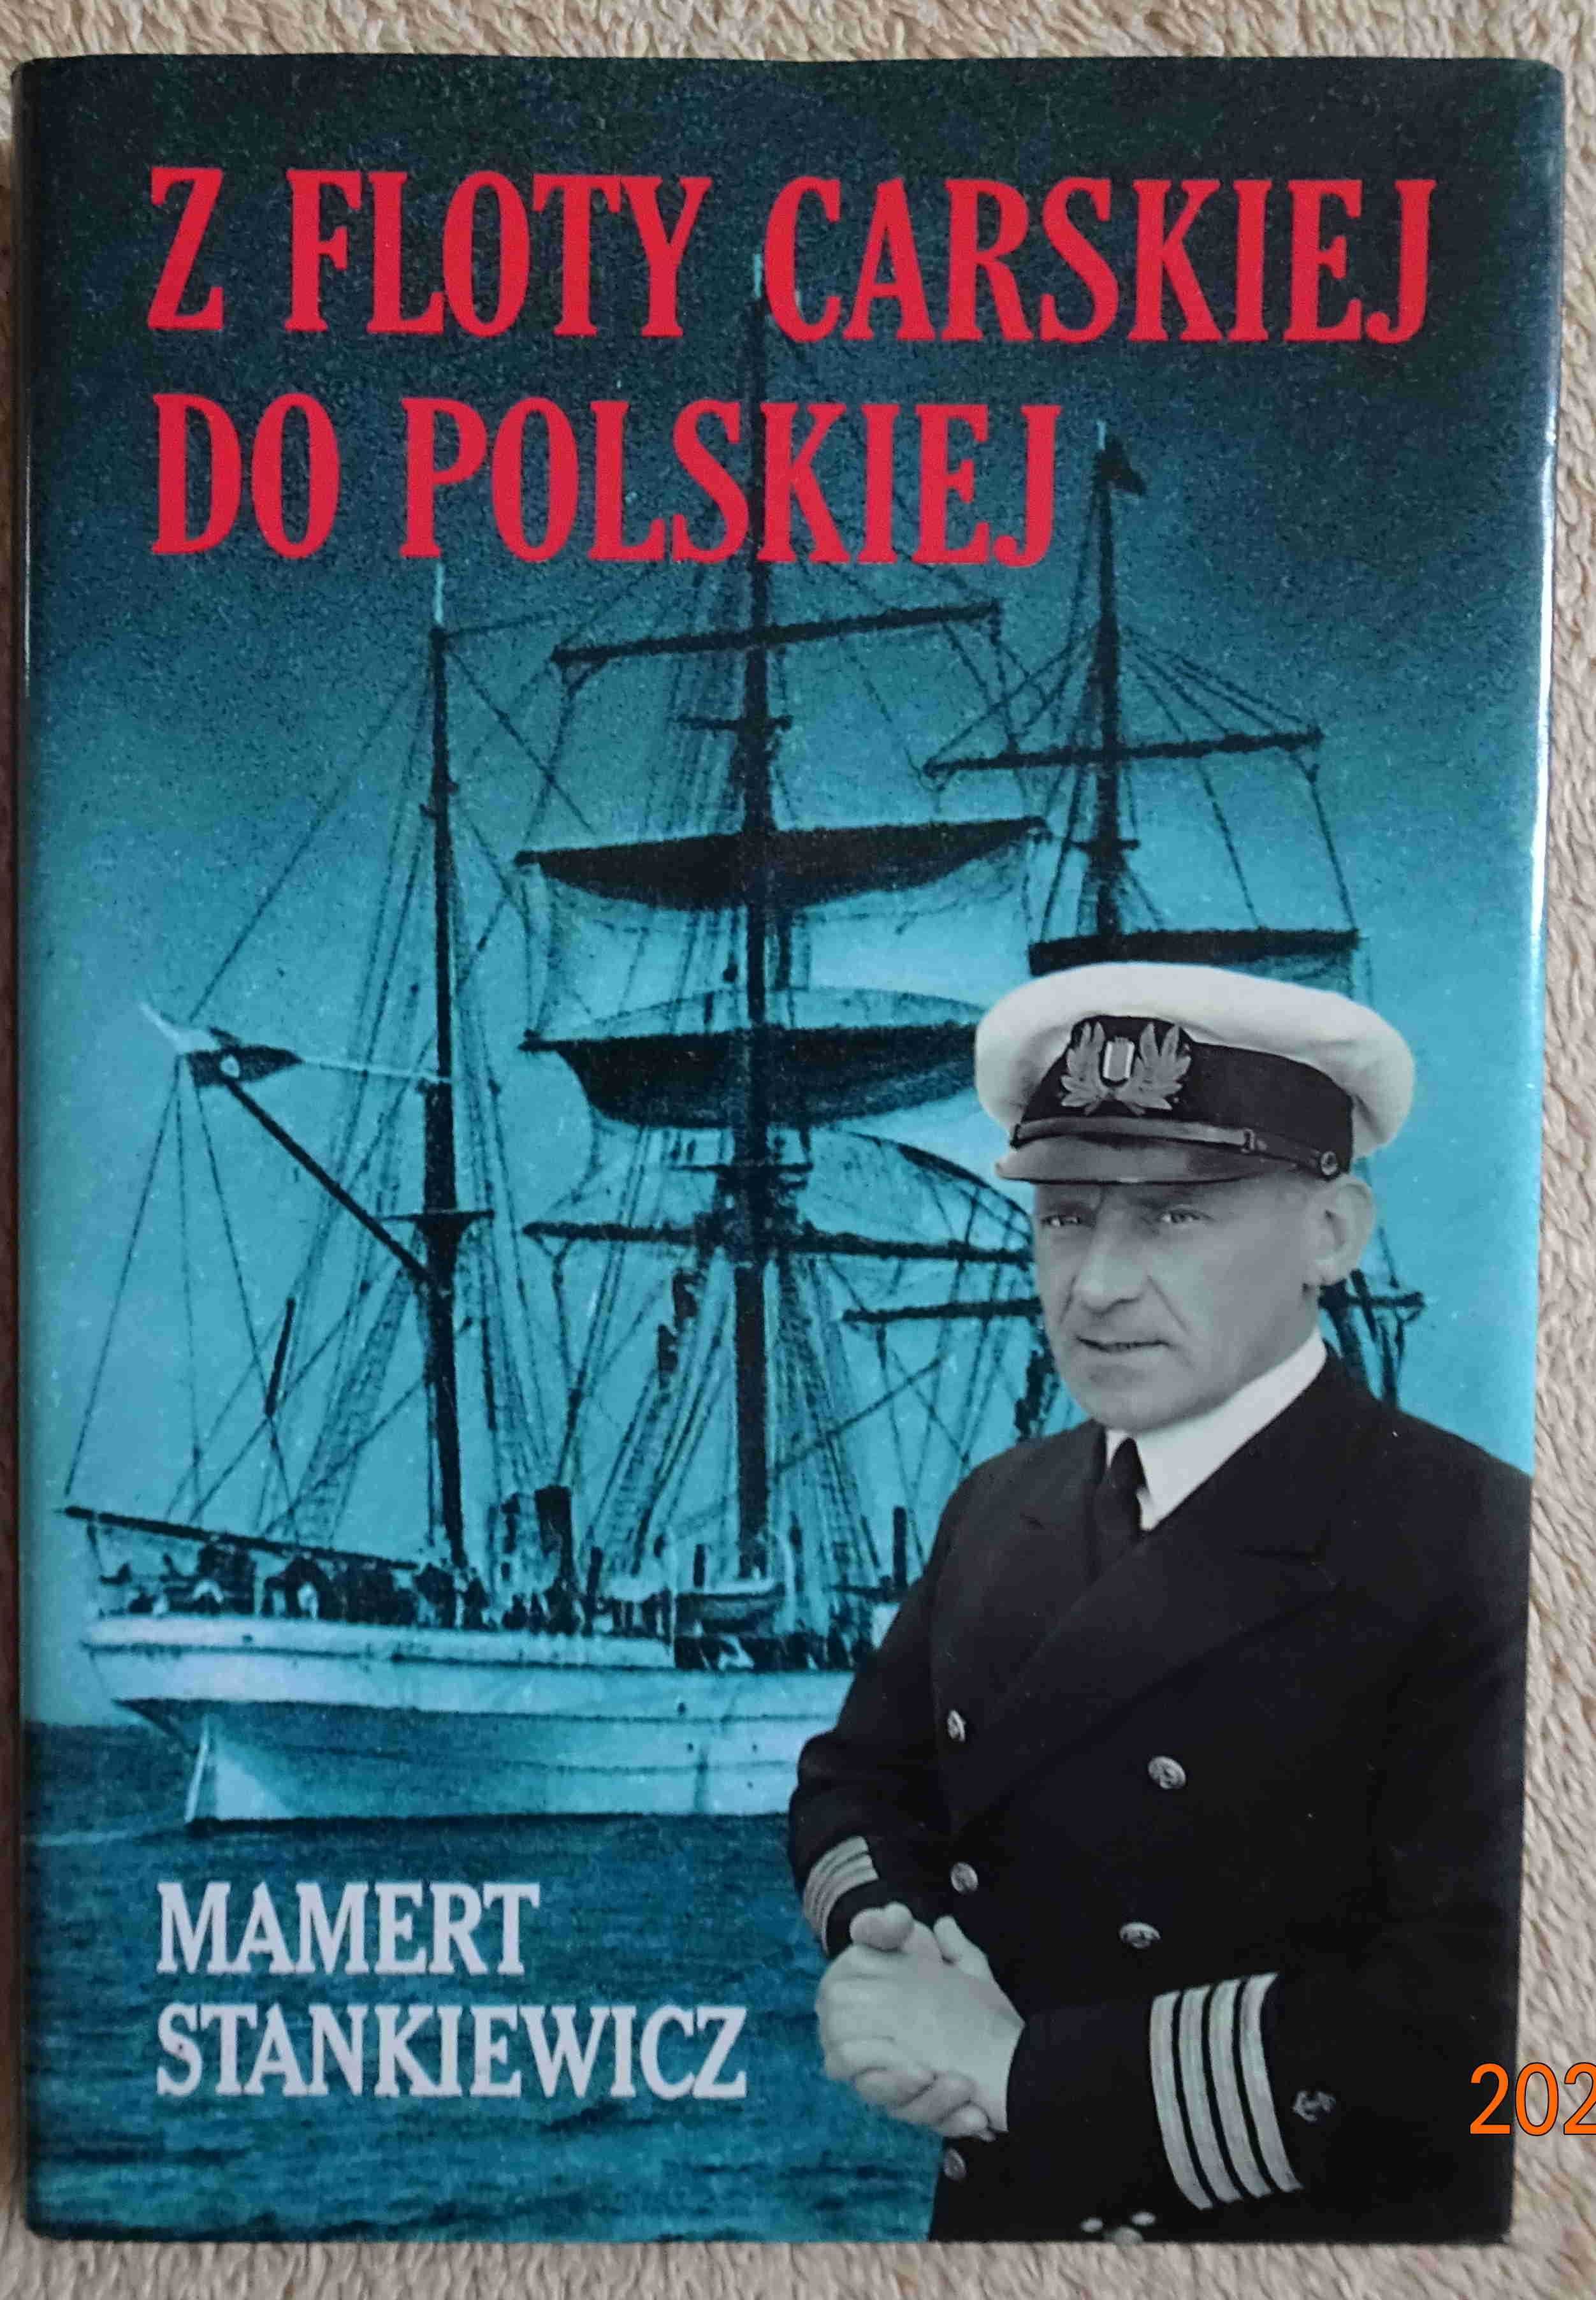 Książka "Z floty carskiej do polskiej" Mamert Stankiewicz